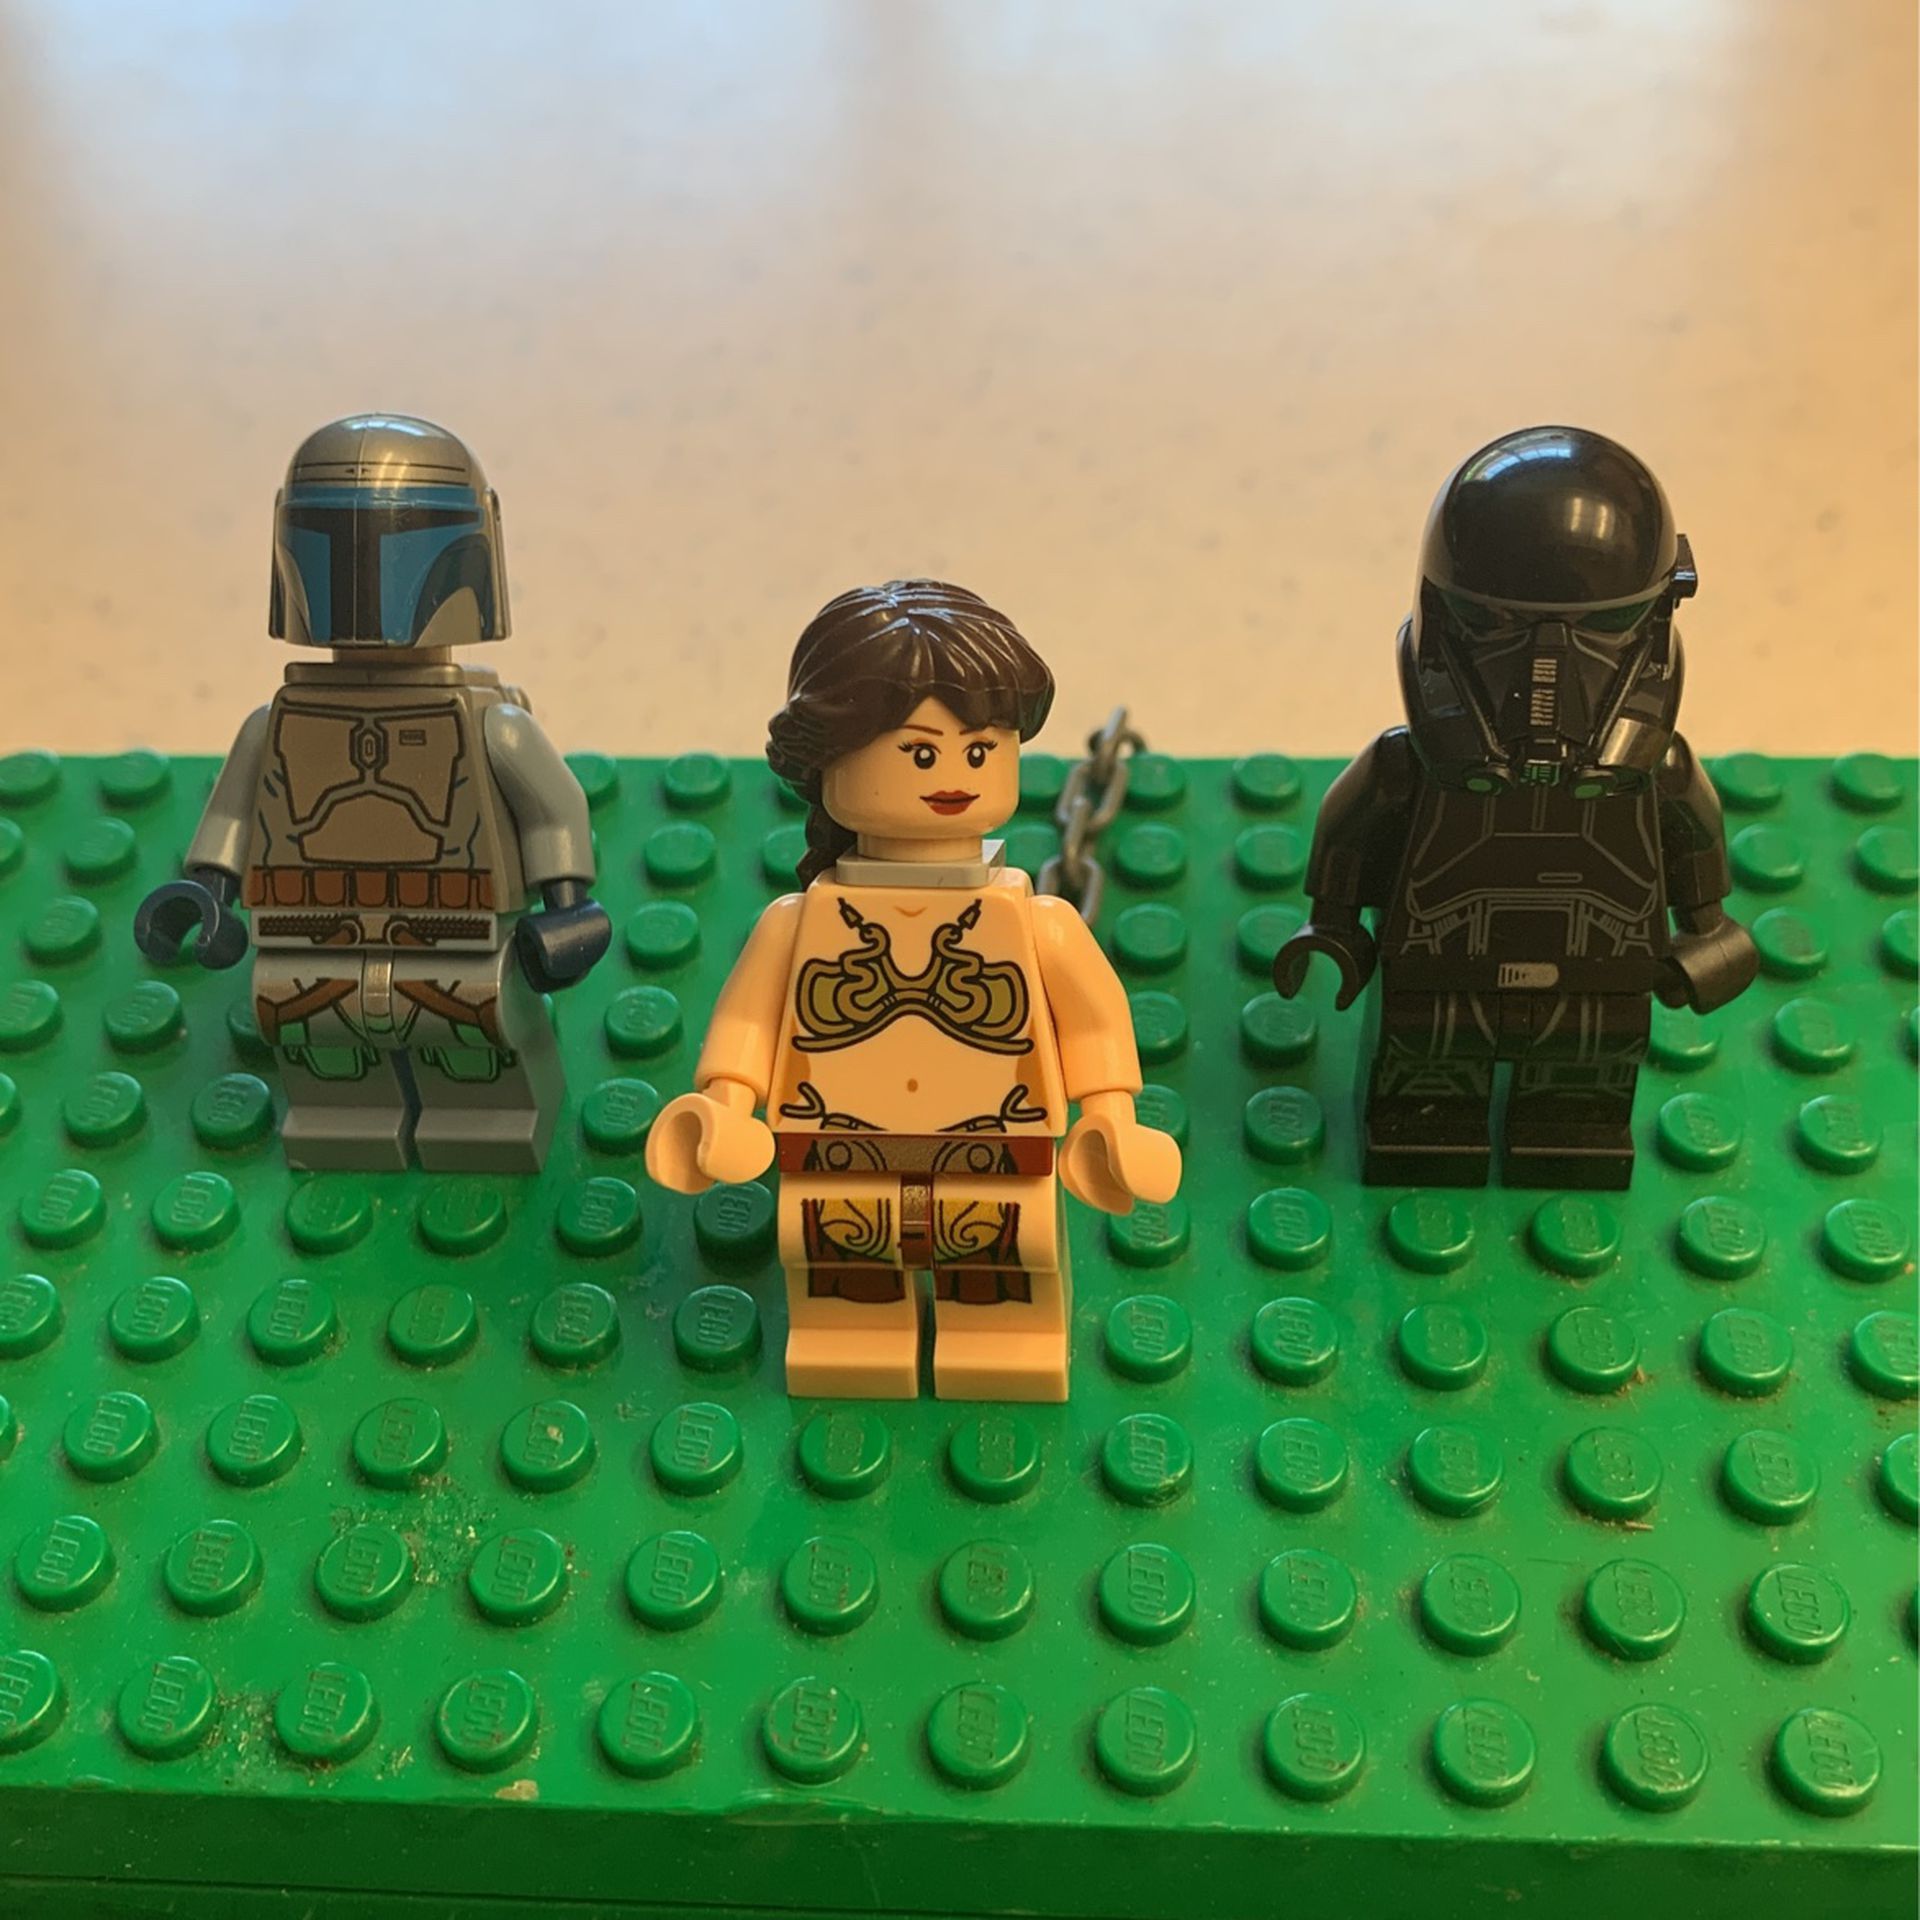 Lego Star Wars Minifigures For Jeffrey 